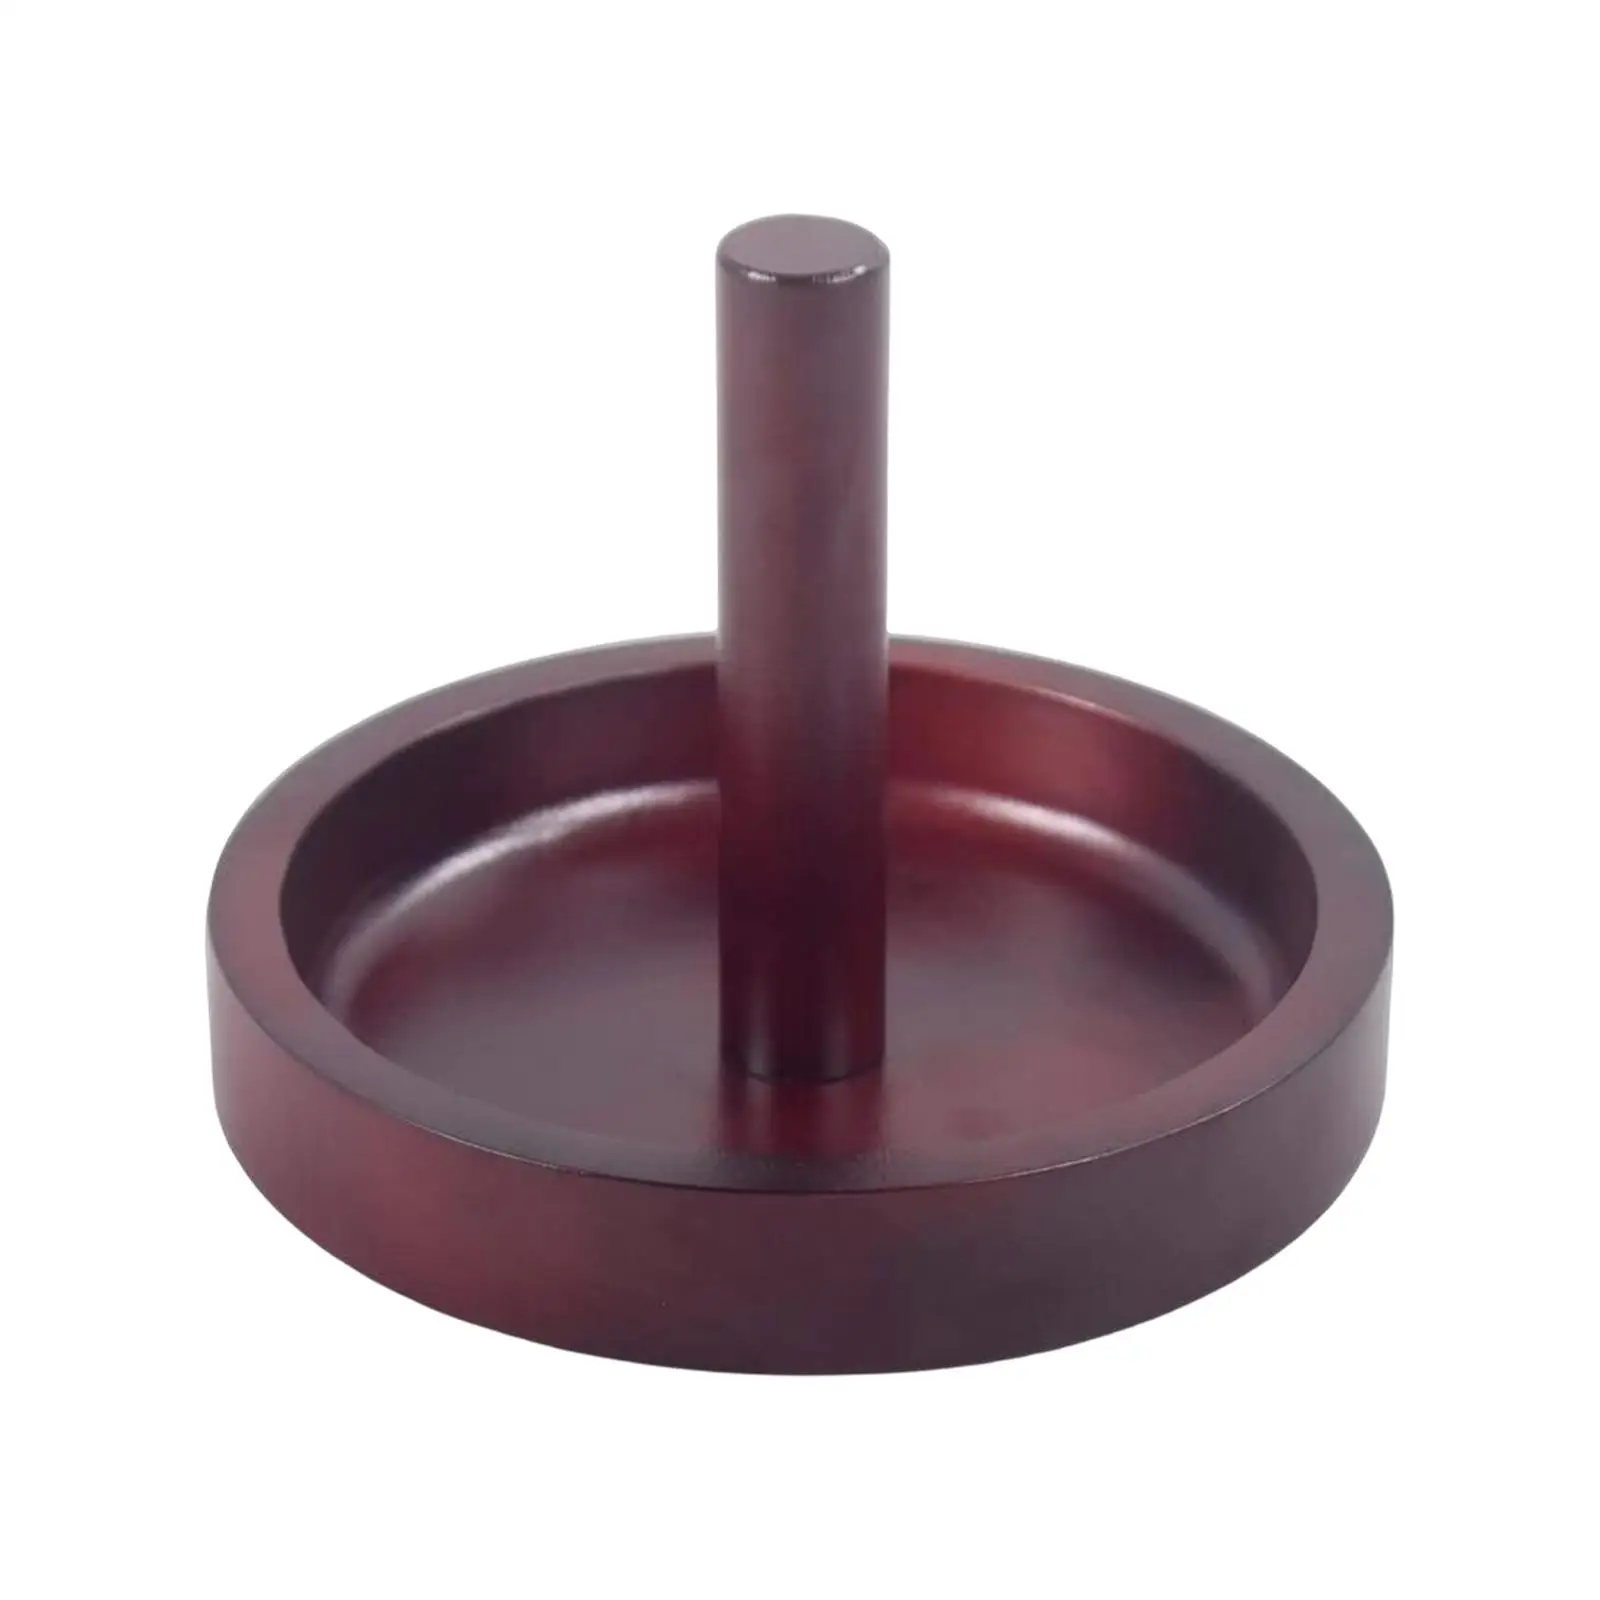 Billiard Cone Talc Bowl Cone Chalk Holder Durable Portable for Accessories